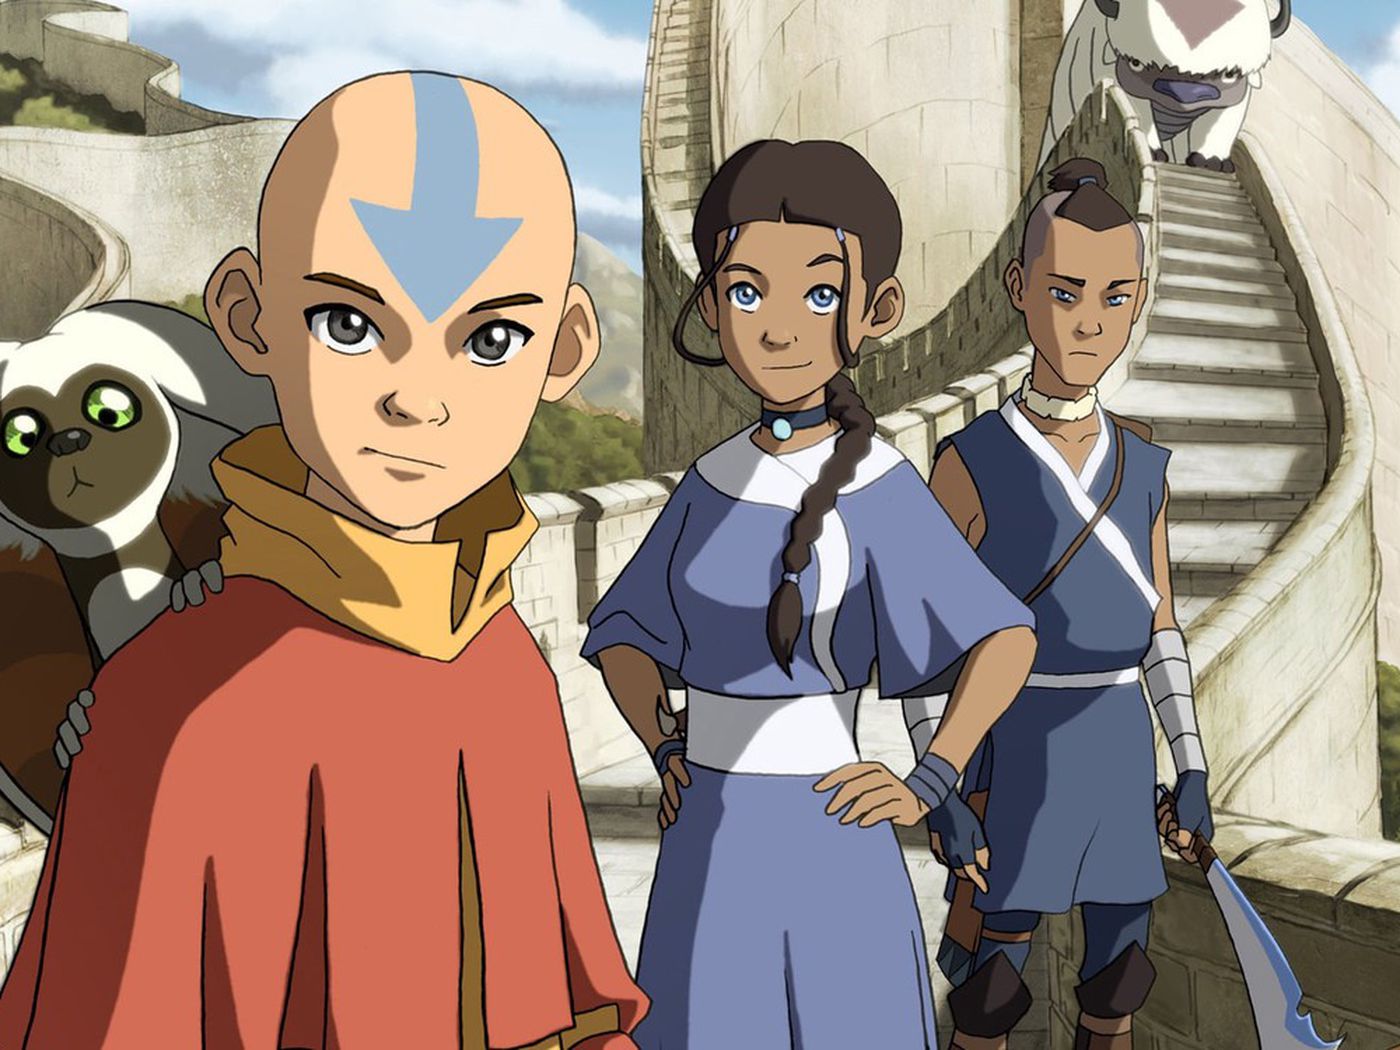 Avatar An Anime: Avatar An Anime năm 2024 đảm bảo sẽ khiến lòng người hâm mộ sôi động. Với đội ngũ làm phim tài năng và kinh nghiệm, Avatar An Anime sẽ mang đến cho khán giả những câu chuyện tuyệt vời về thế giới Avatar.